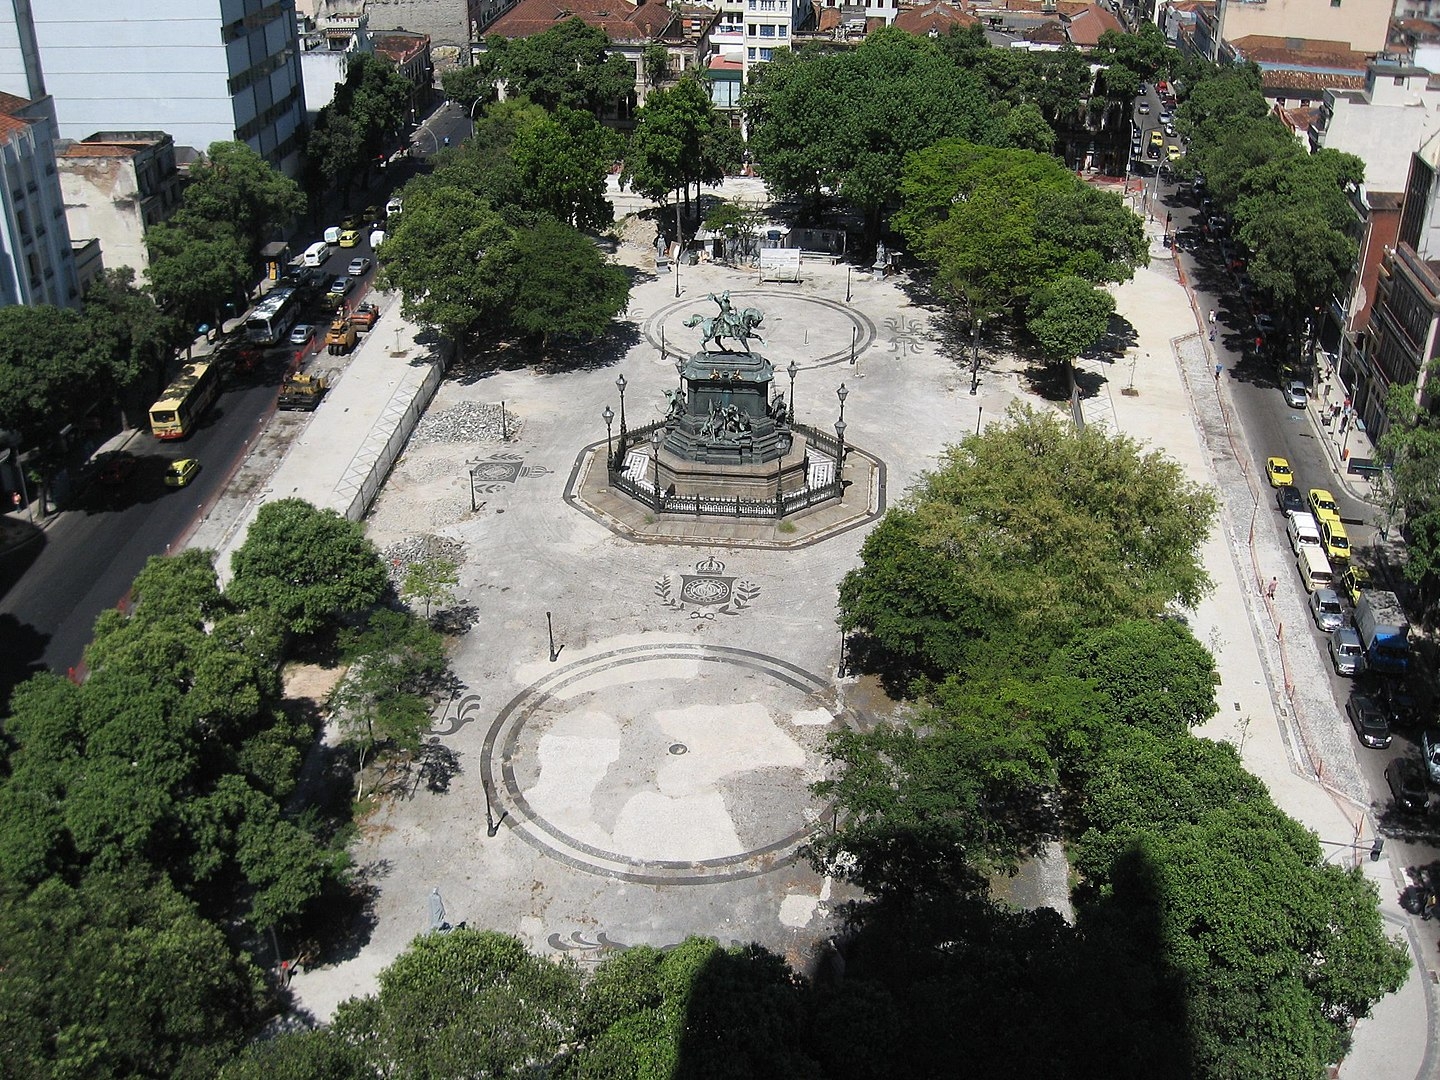 Em 21 de abril de 1792 ele foi enforcado, no centro do Rio de Janeiro. O local da execução foi a Praça da Lampadosa, atual Praça Tiradentes. Reprodução: Flipar